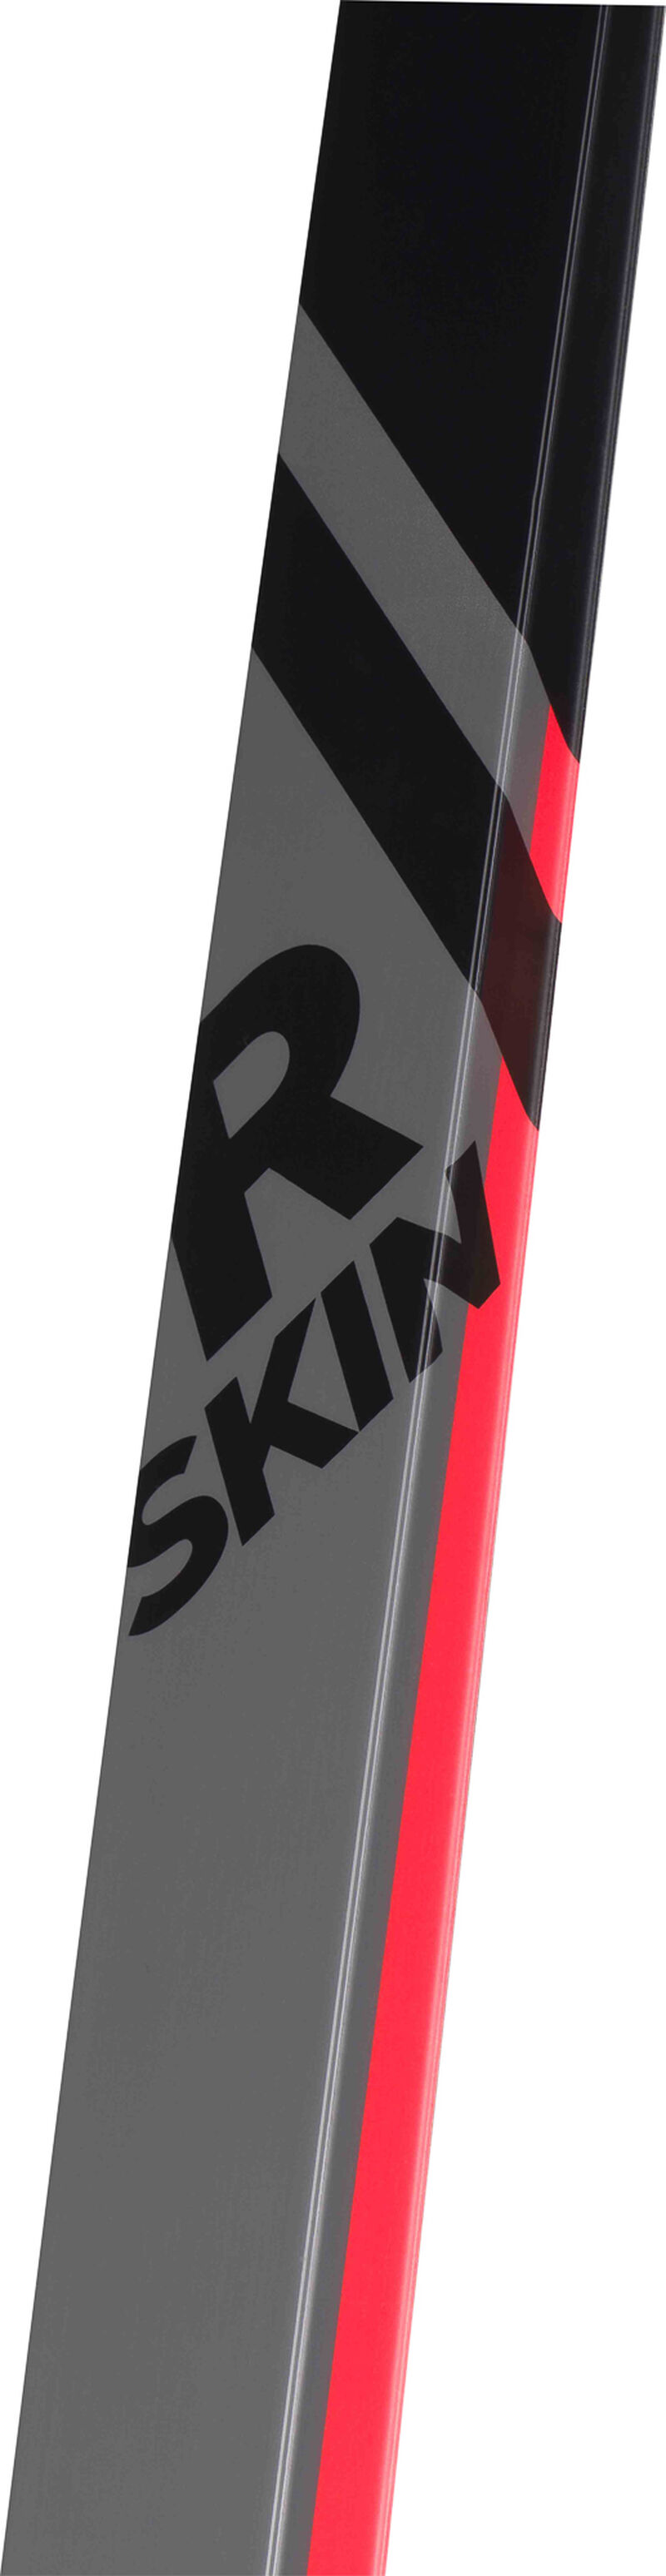 Unisex Nordic Skis X-Ium R-Skin STIFF